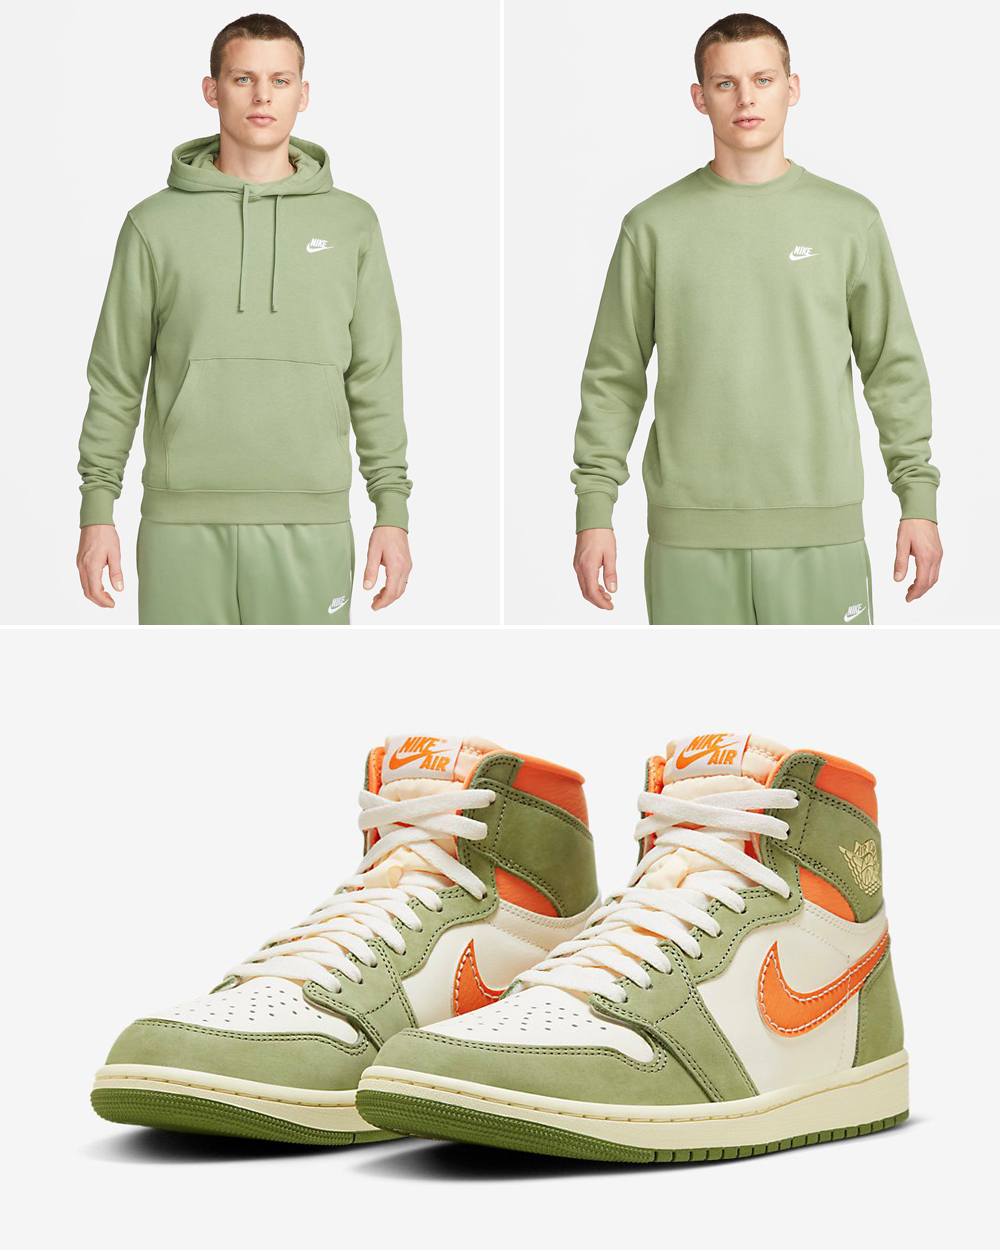 Air Jordan 1 High Celadon Nike Clothing